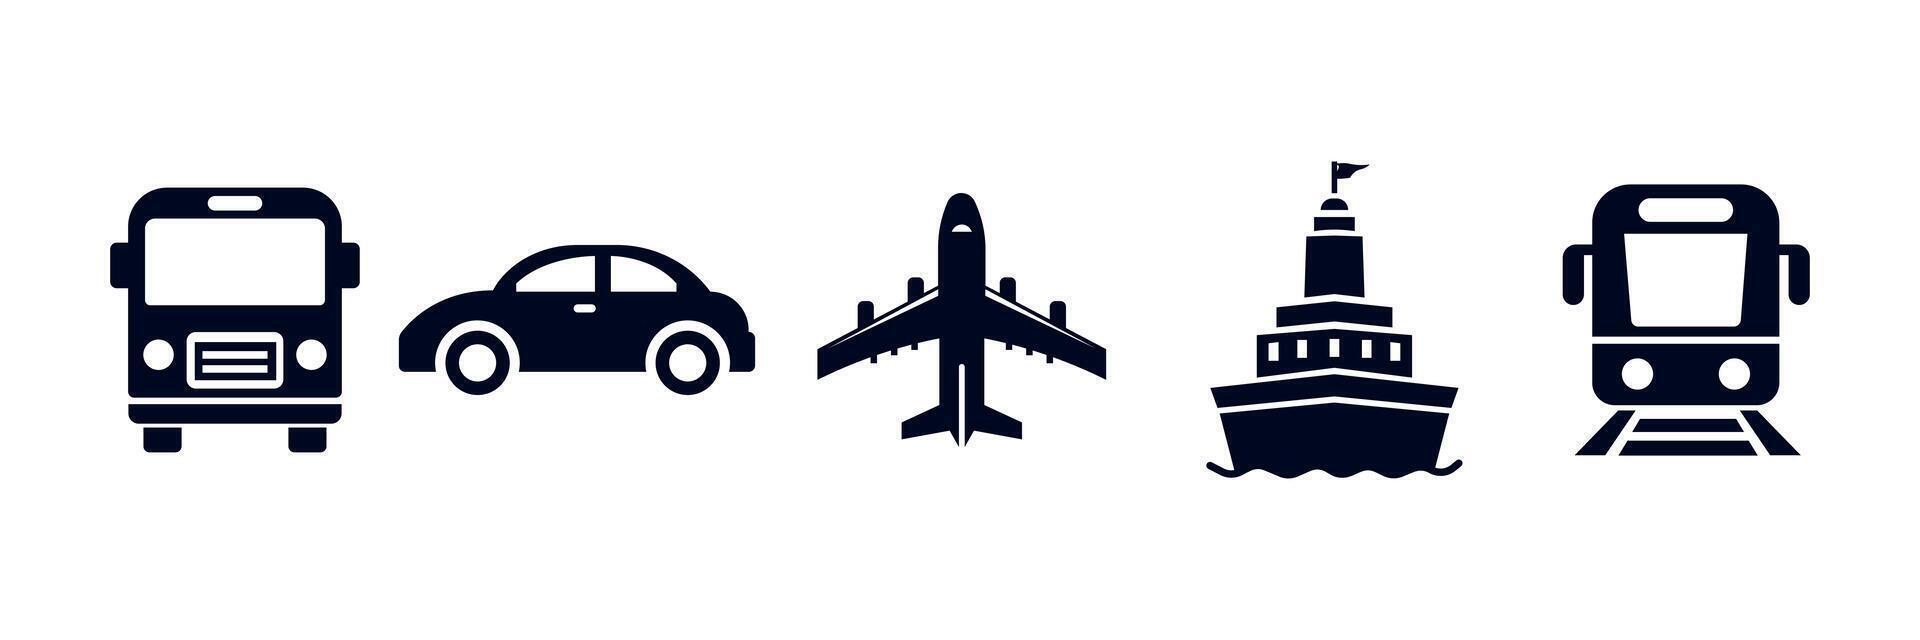 público transporte definir. transporte ícones. público ônibus, automóvel, avião, navio ou balsa, trem. vetor ilustração